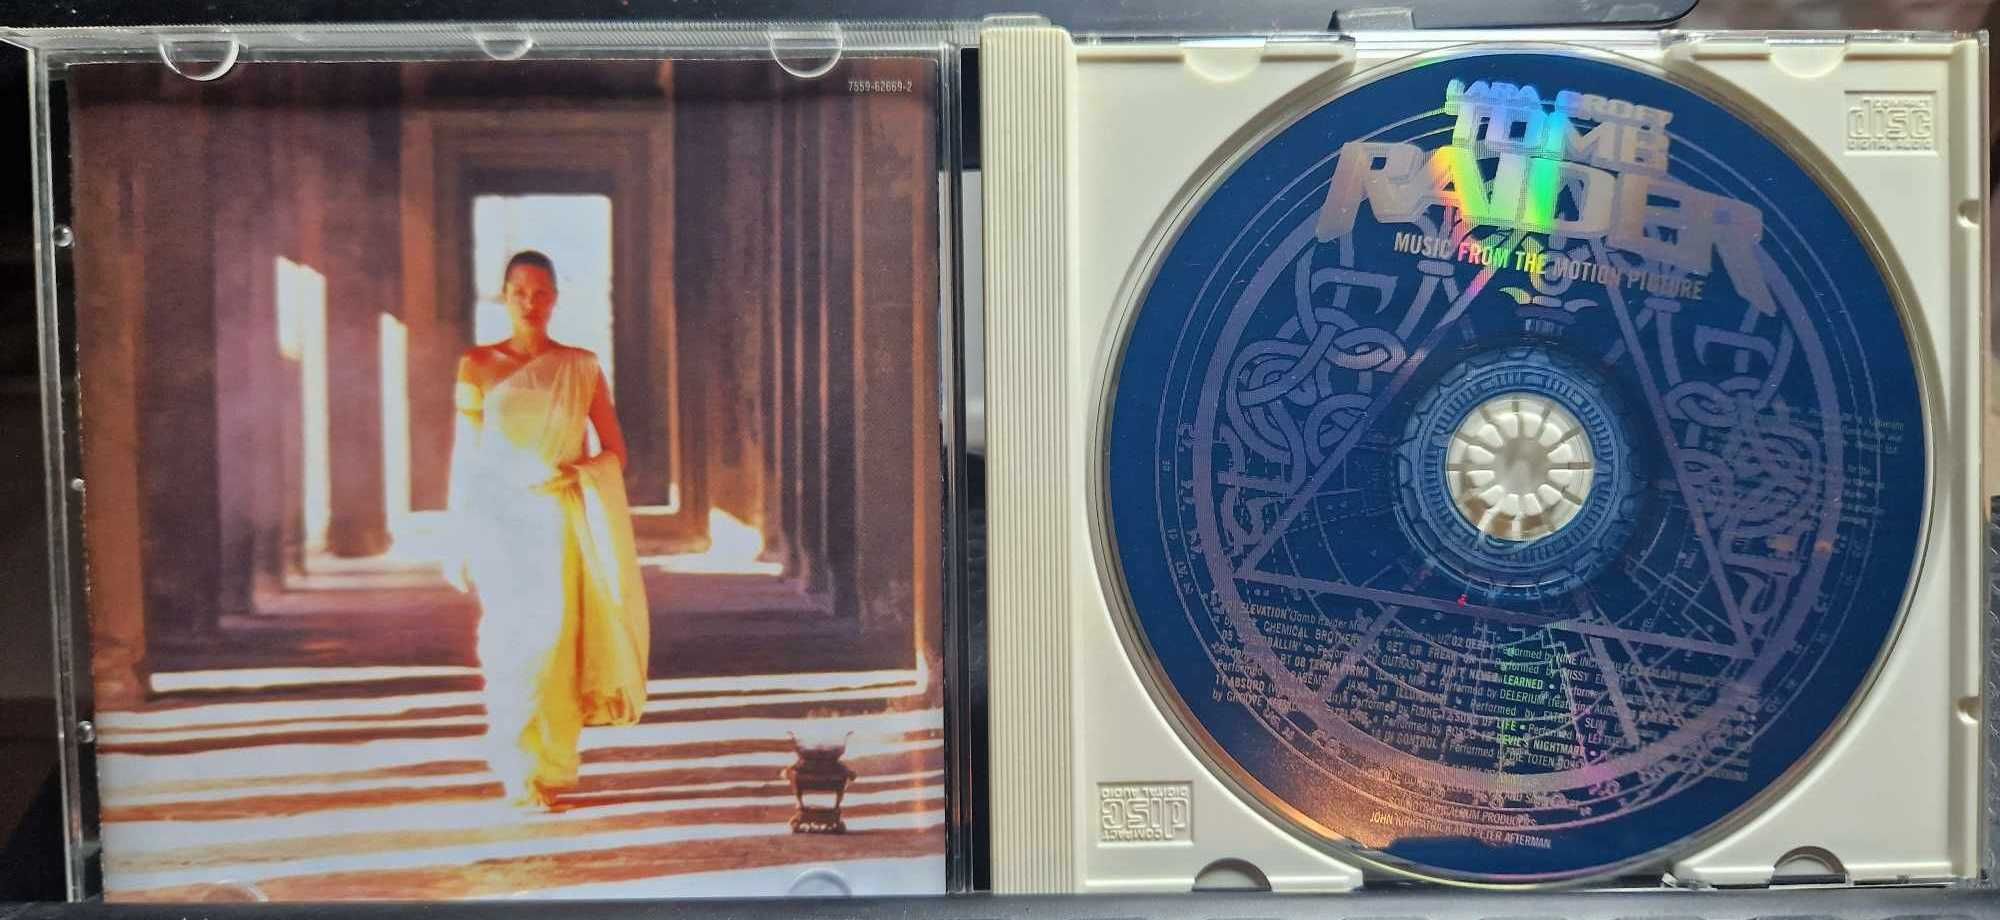 Lara Croft Tomb Raider VA Soundtrack OST CD